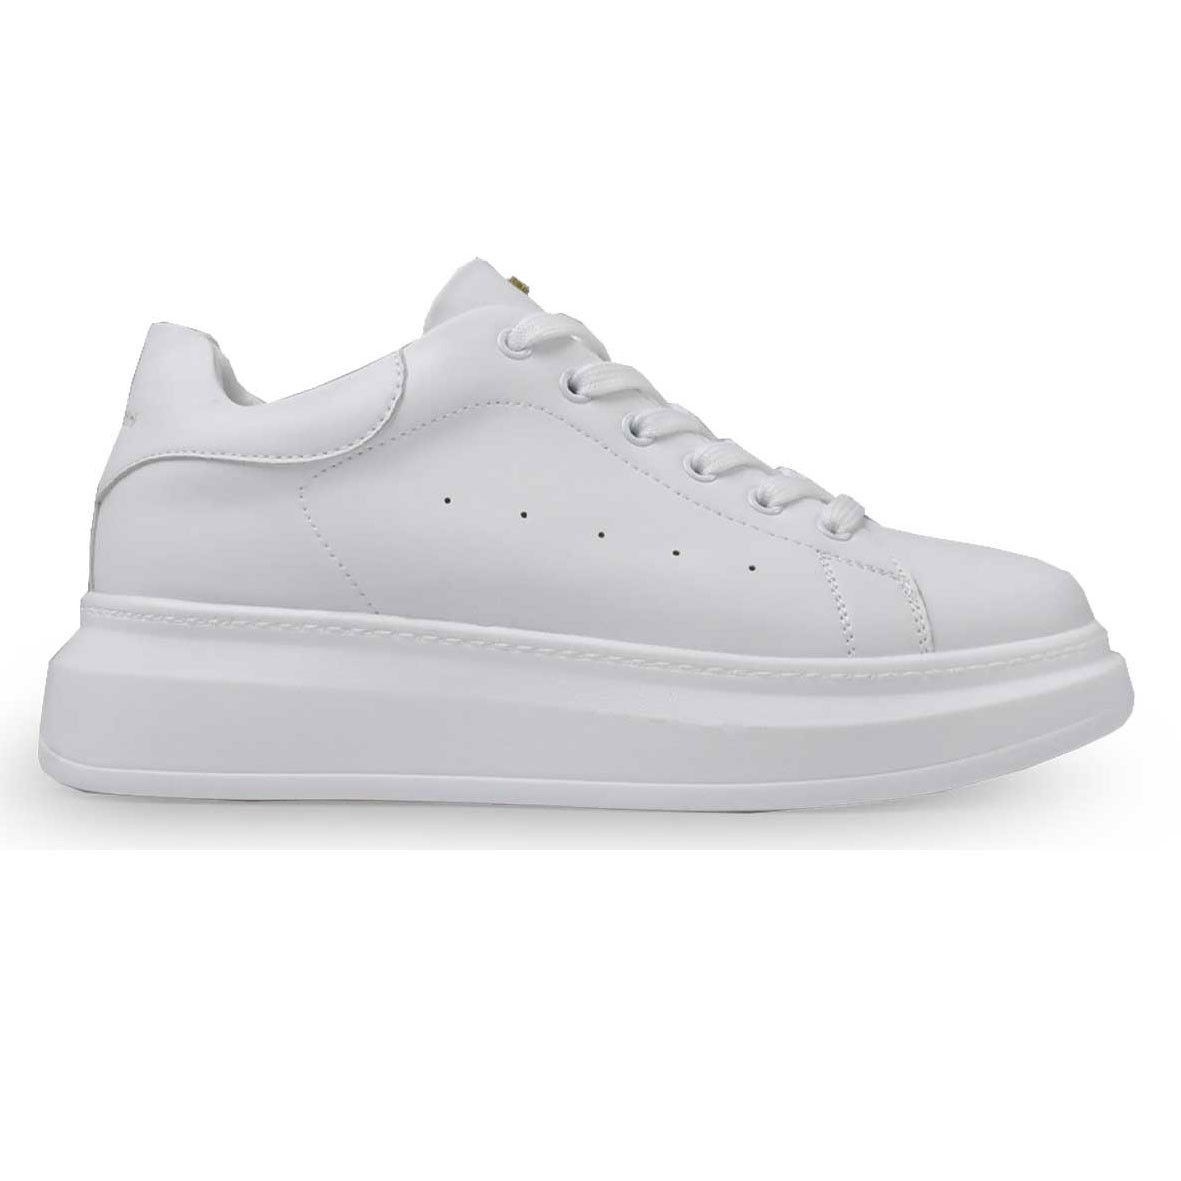 Renato Garini Γυναικεία Παπούτσια Sneakers 101-19R Λευκό O119R1012651